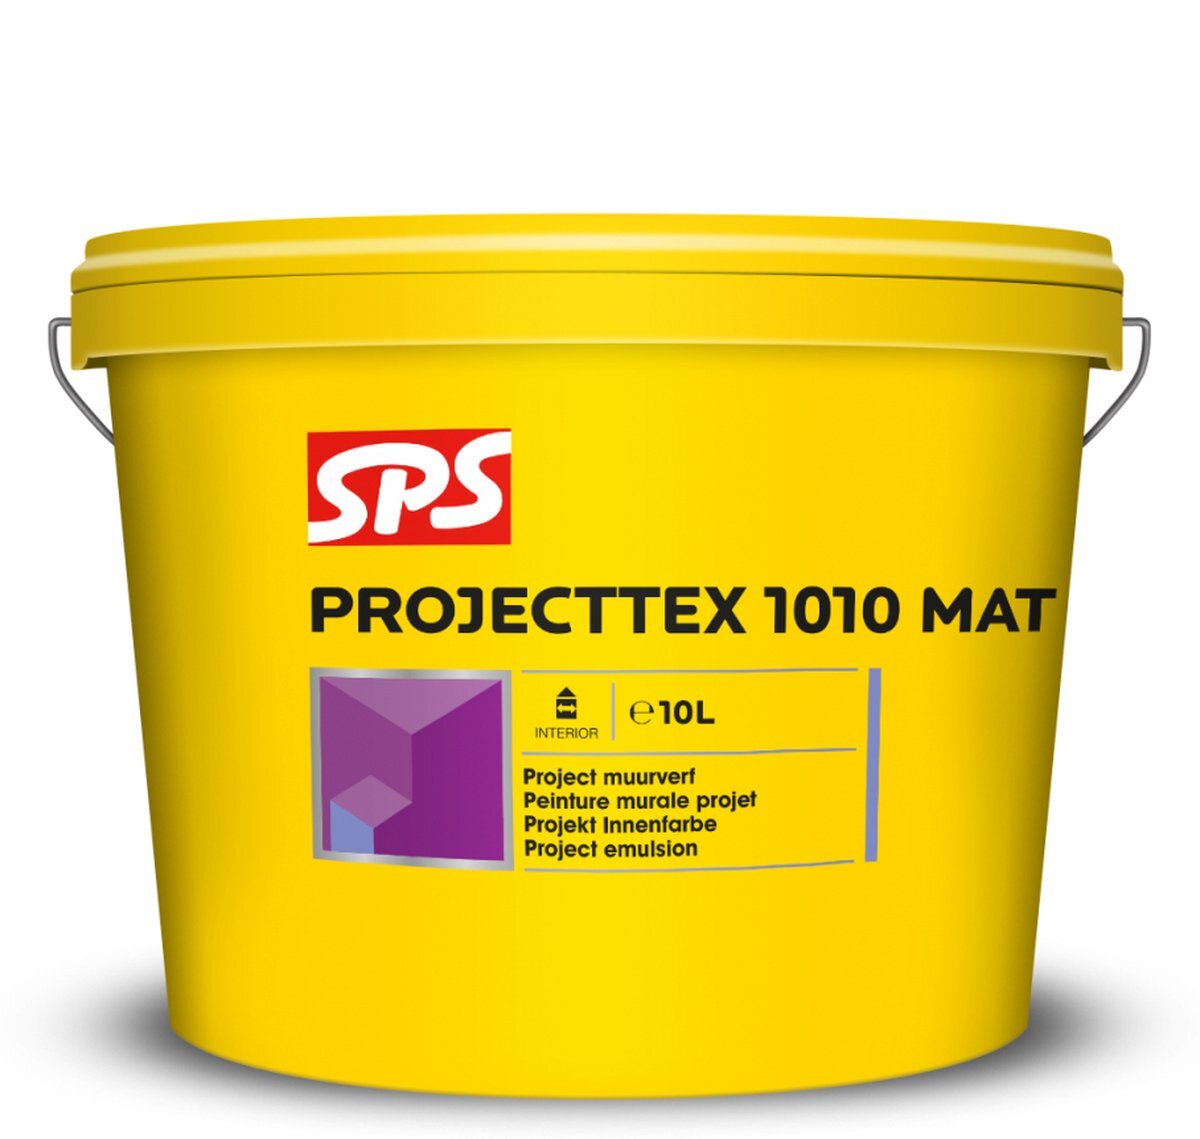 Sps Projecttex 1010 Mat Wit 10l